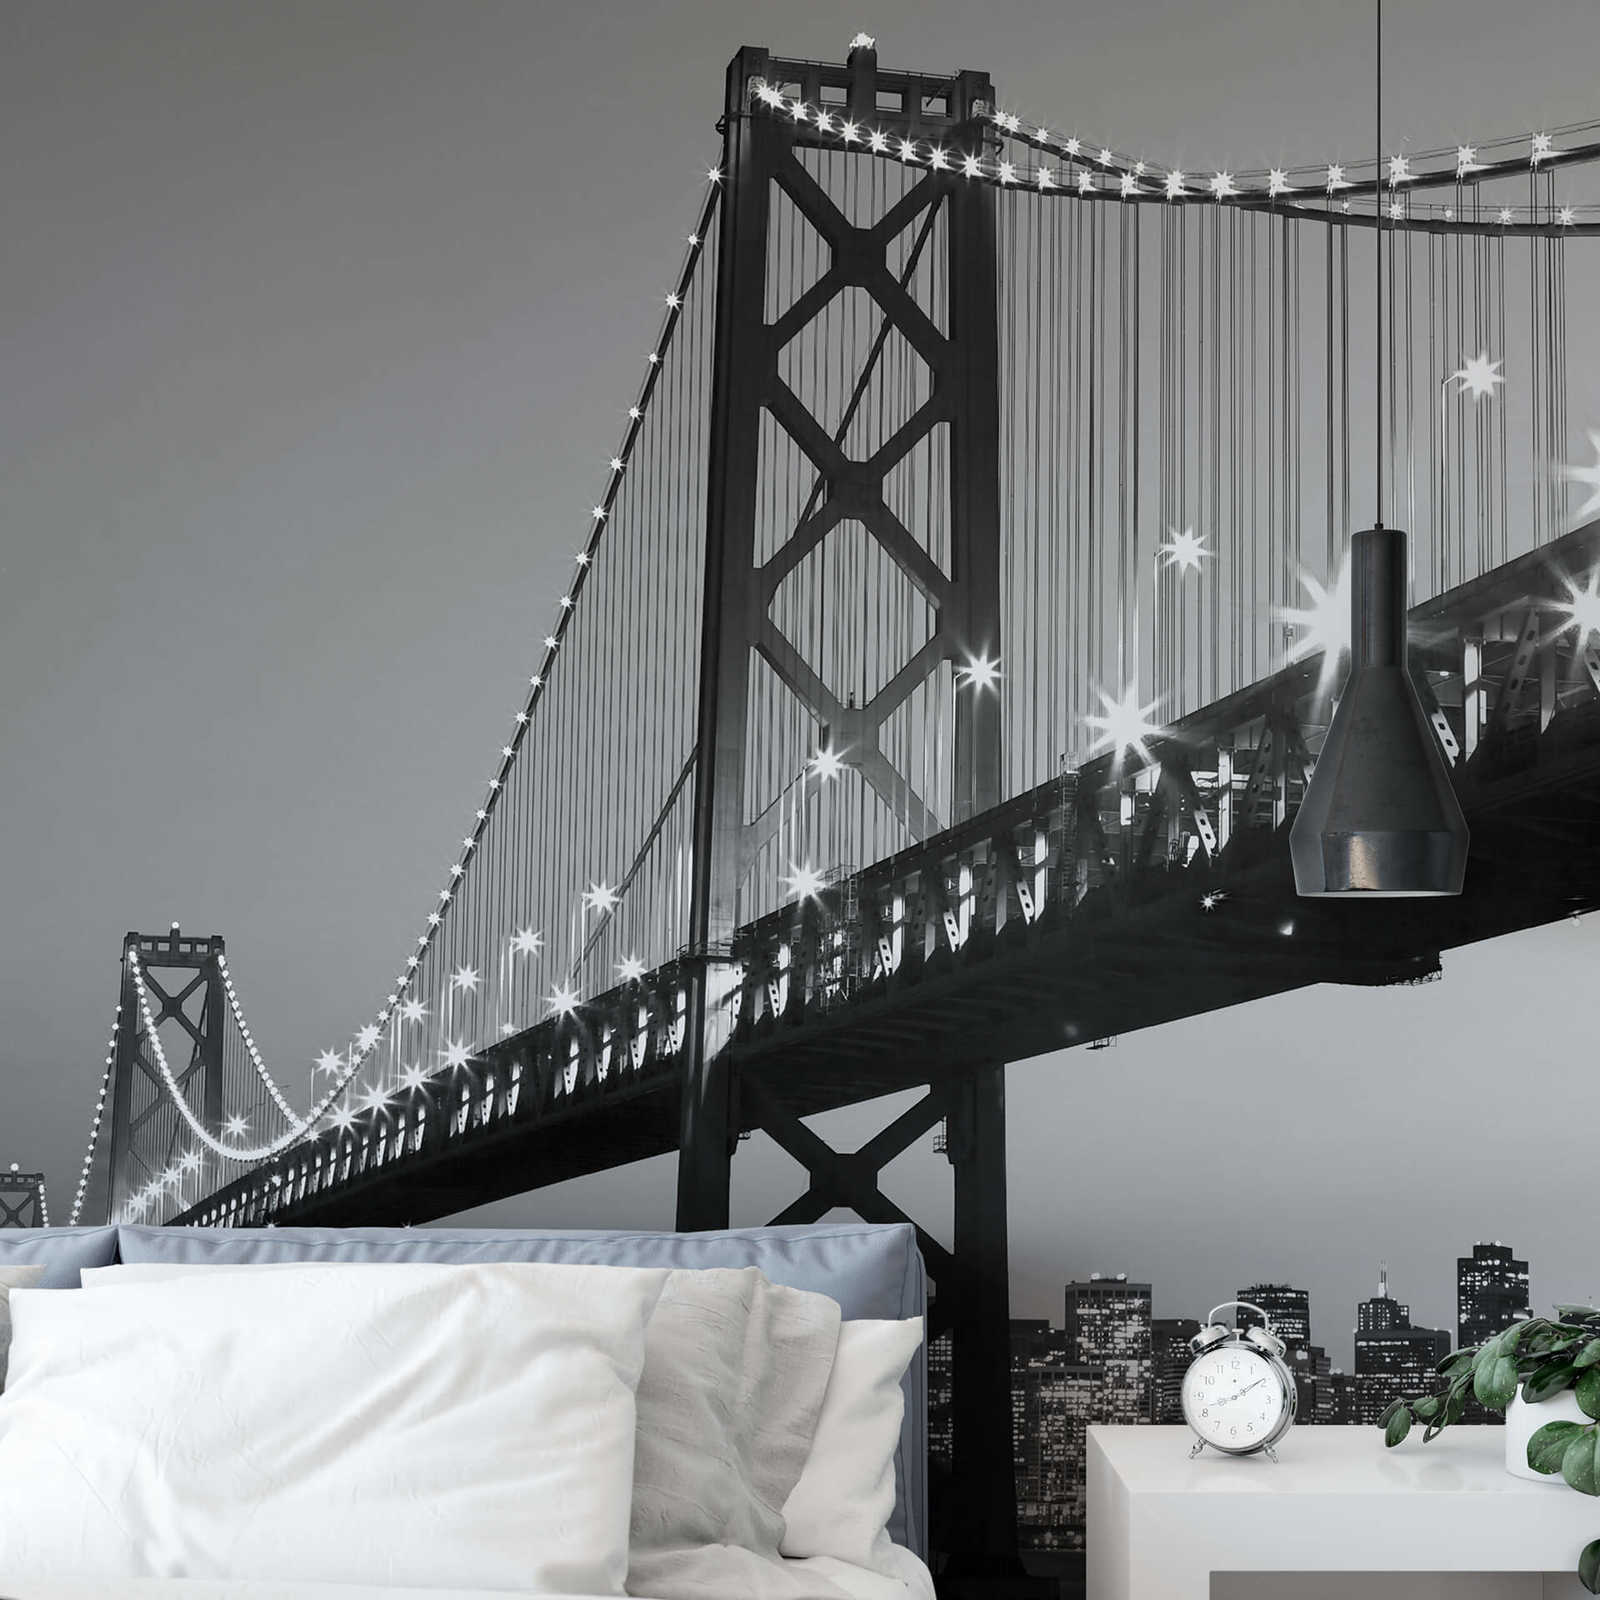             Papier peint panoramique San Francisco noir et blanc, format vertical
        